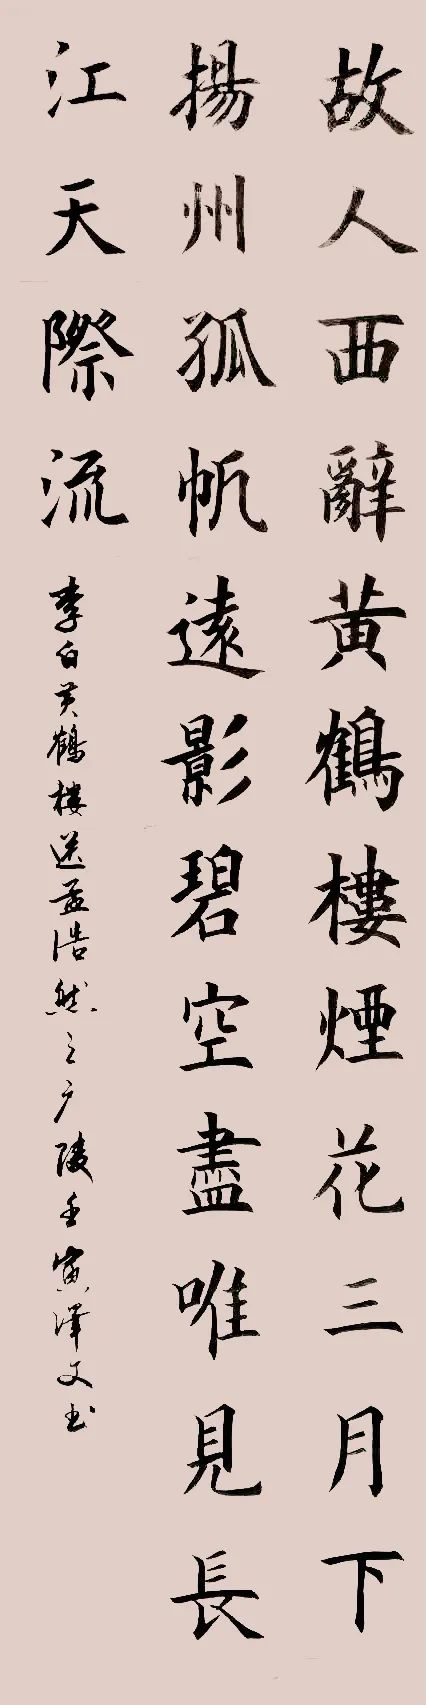 中国大众文化学会名人书画艺术发展委员会——黄泽文